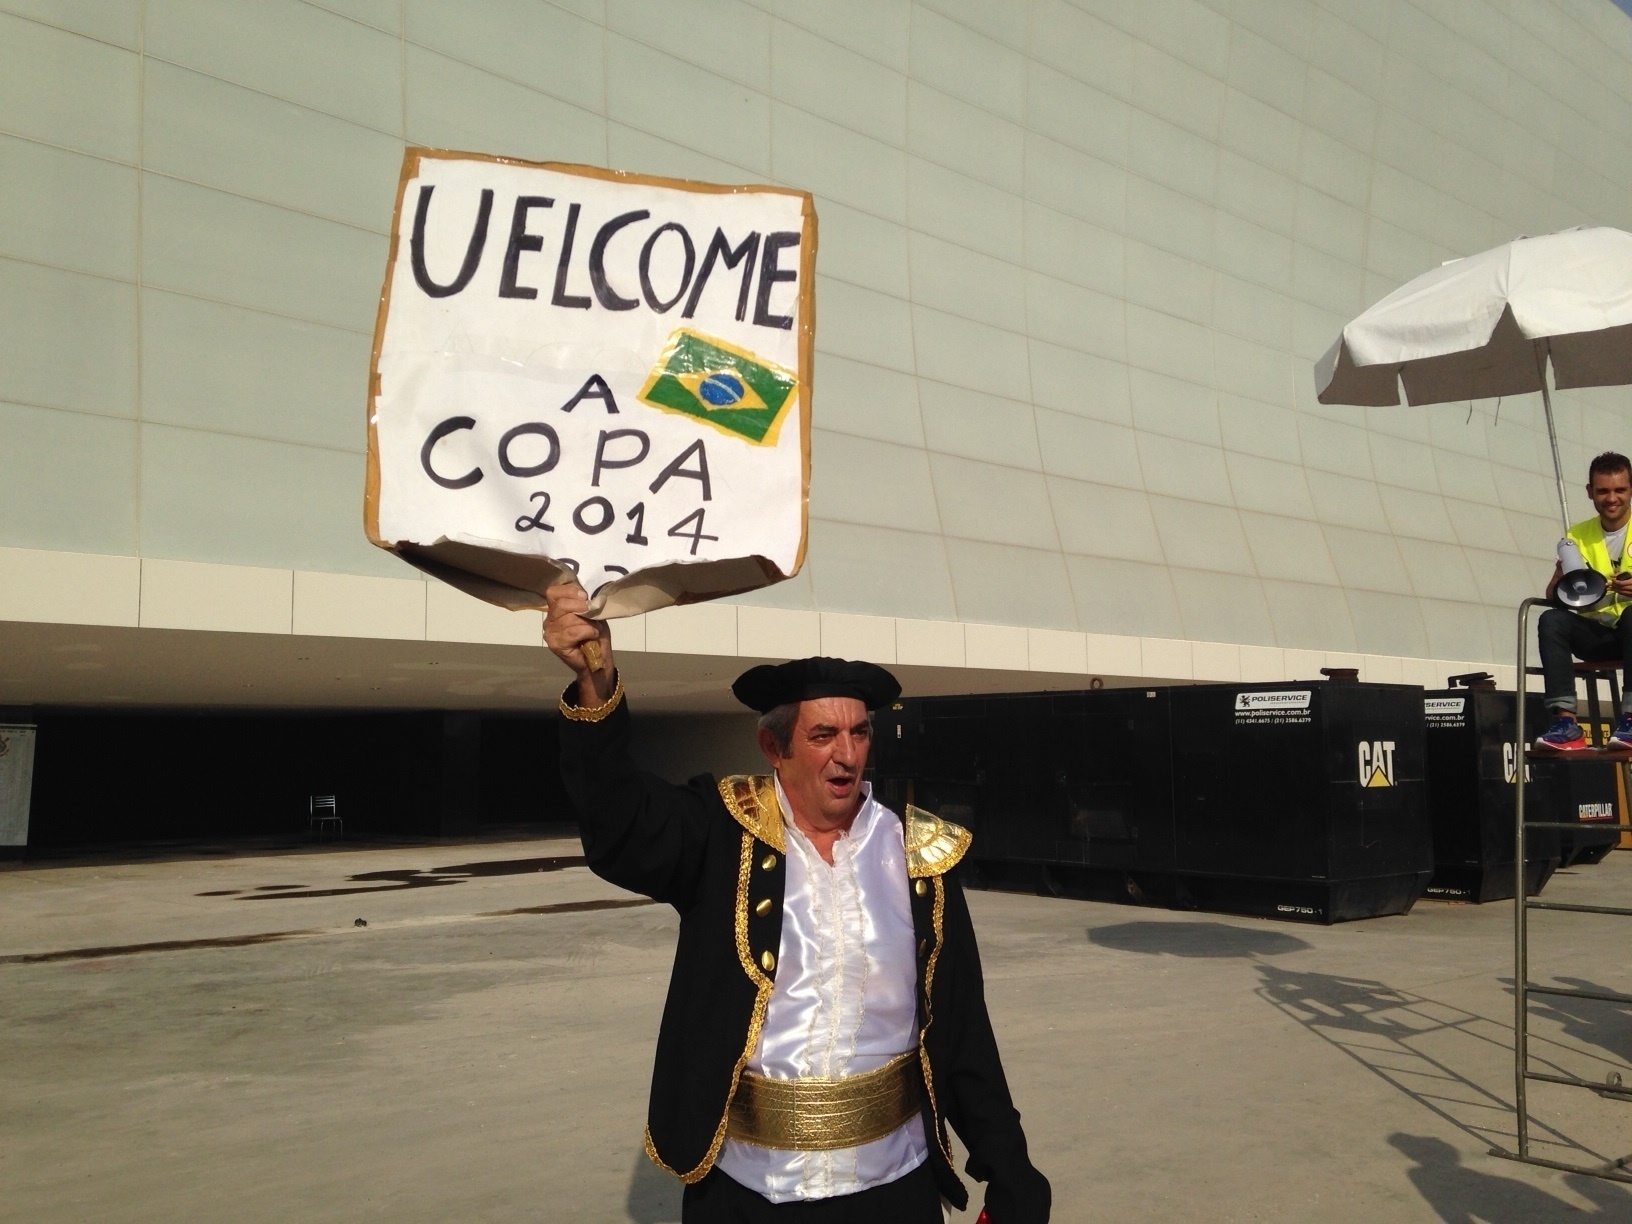 18.mai.2014 - Torcedor do Corinthians escreve cartaz em inglês para dar boas-vindas à Copa, mas erra grafia.